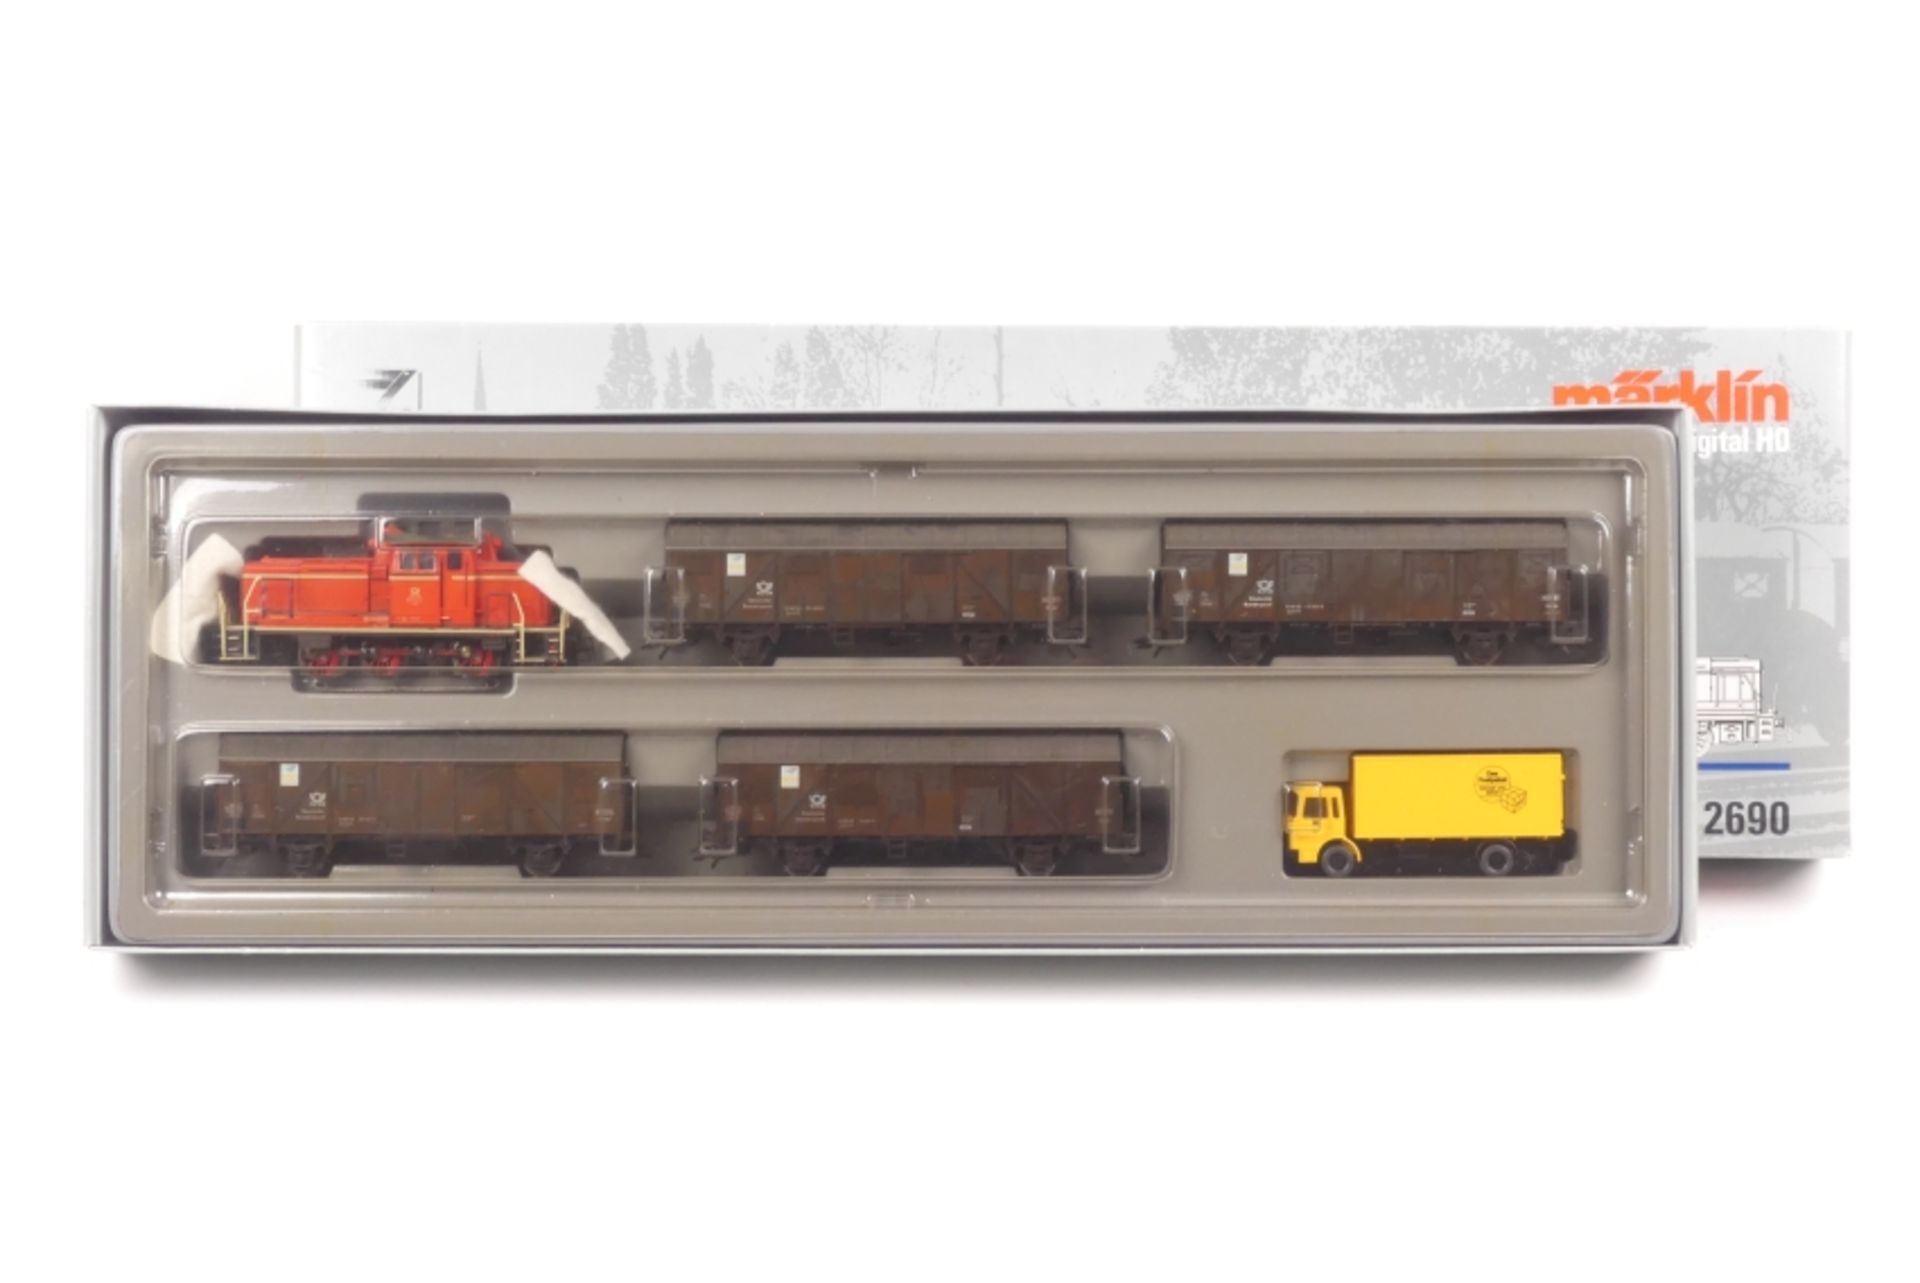 Märklin 2690, Güterzug der Deutschen Bundespost, Diesellok mit leichten Lackschäden, vier Wagen